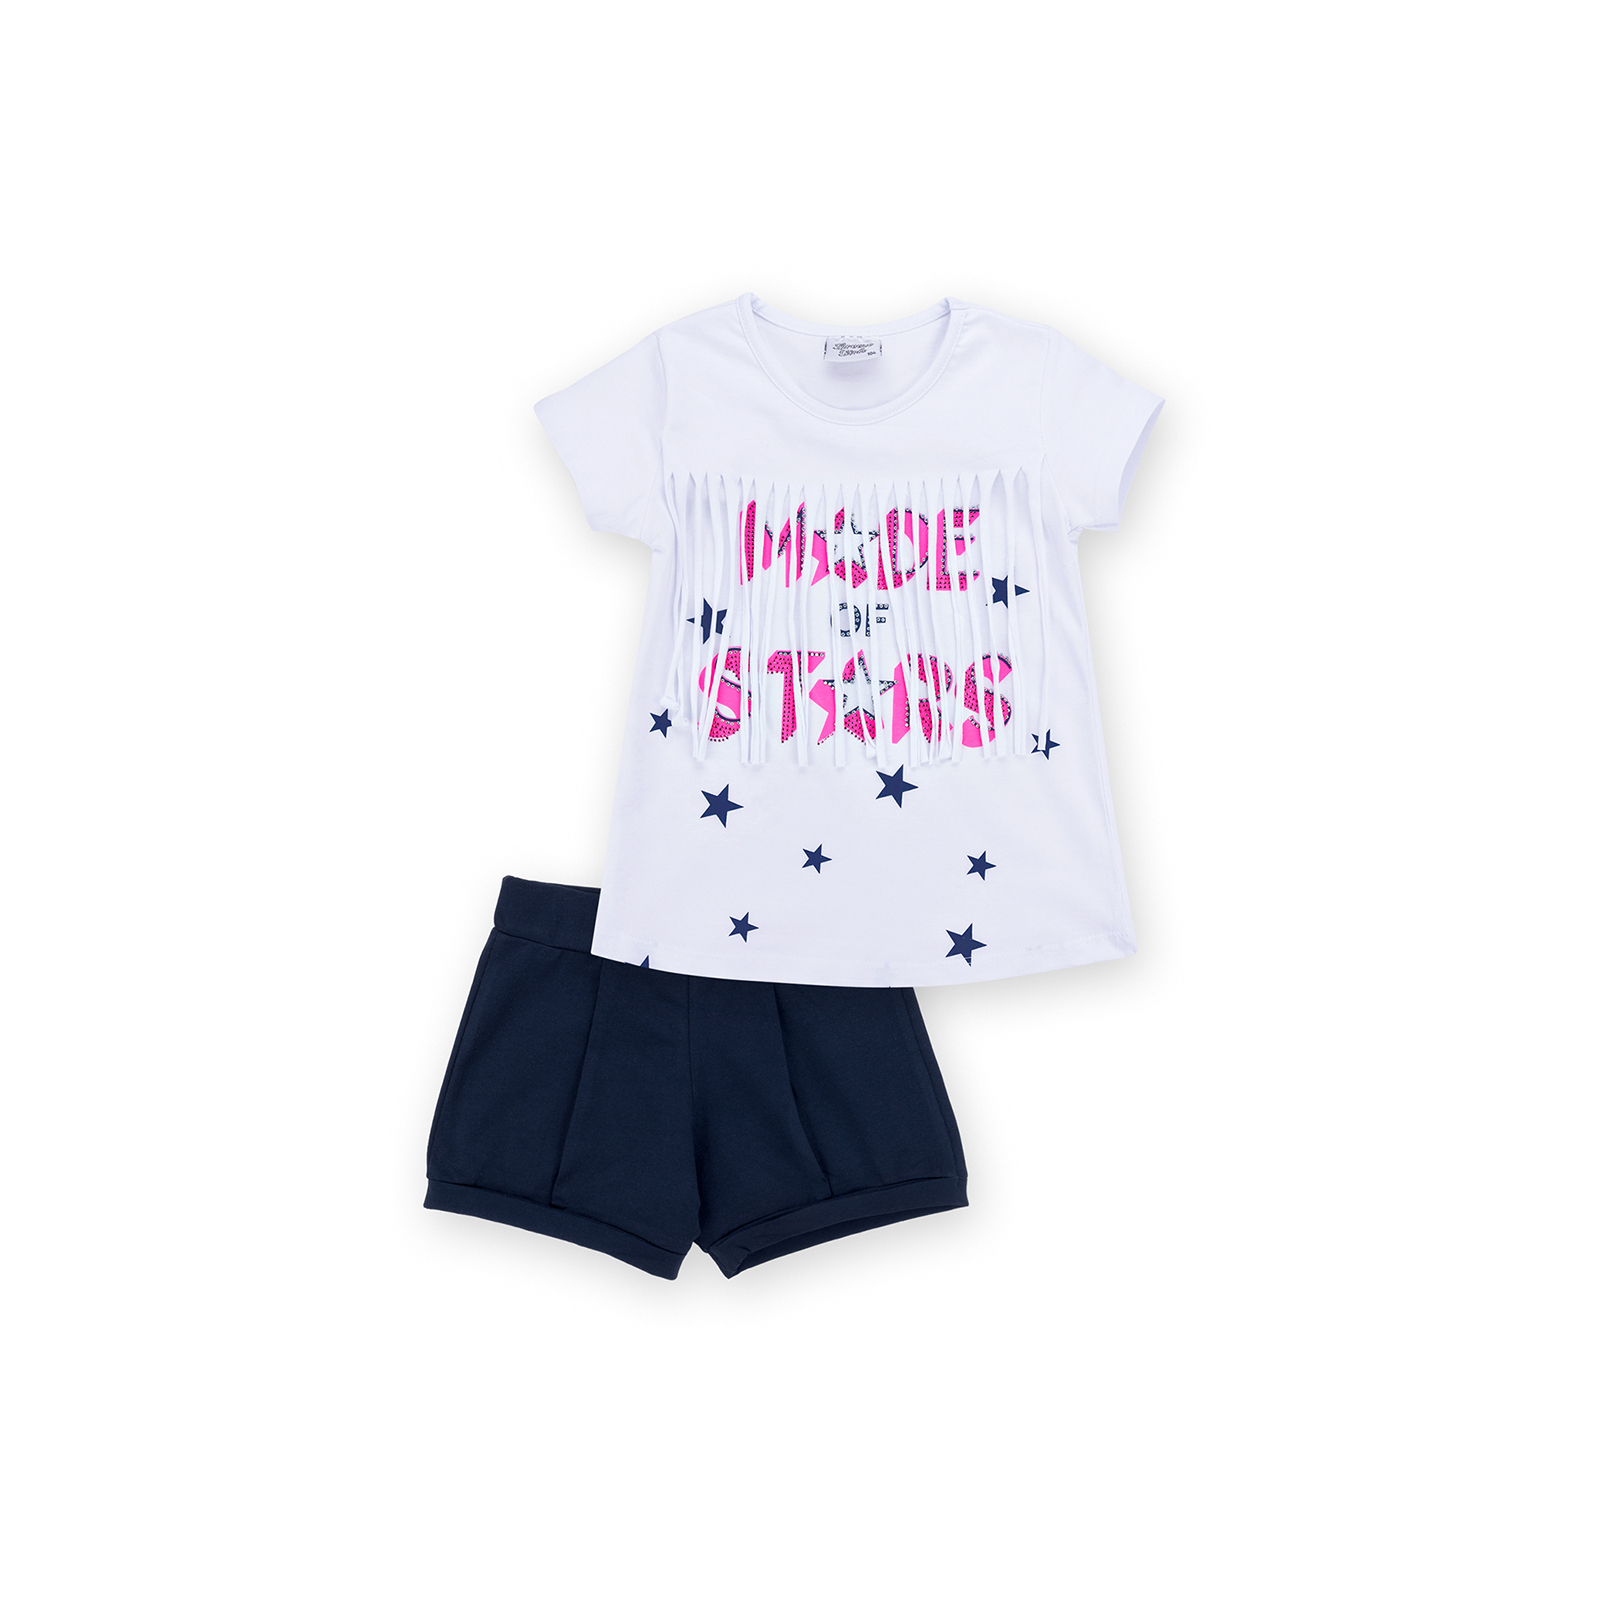 Набор детской одежды Breeze футболка со звездочками с шортами (9036-122G-pink)